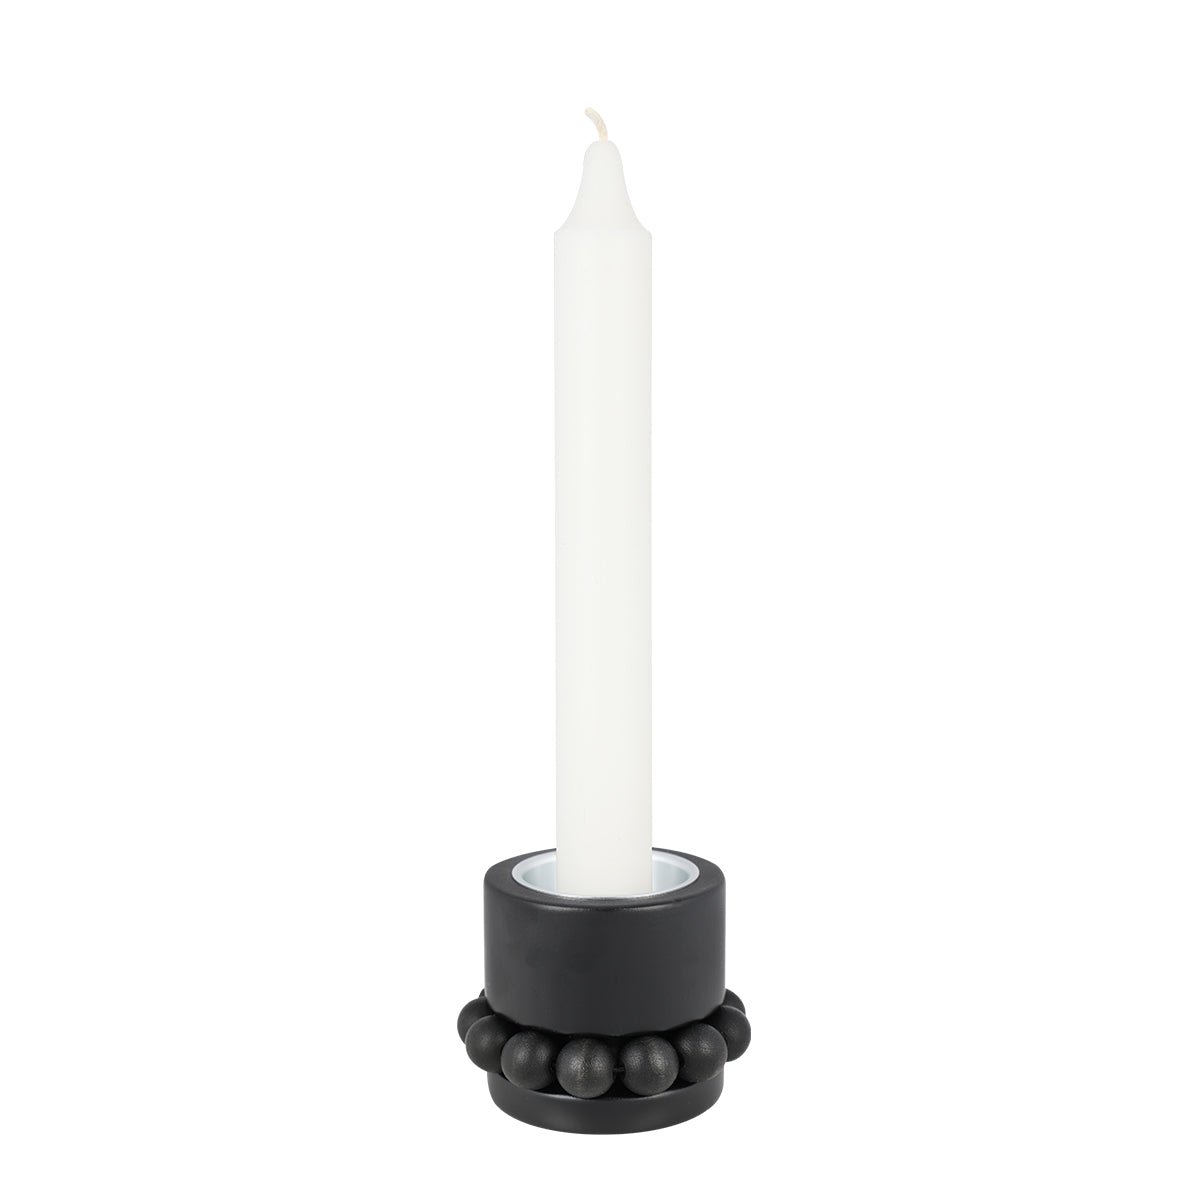 Prinsessa candleholder, black